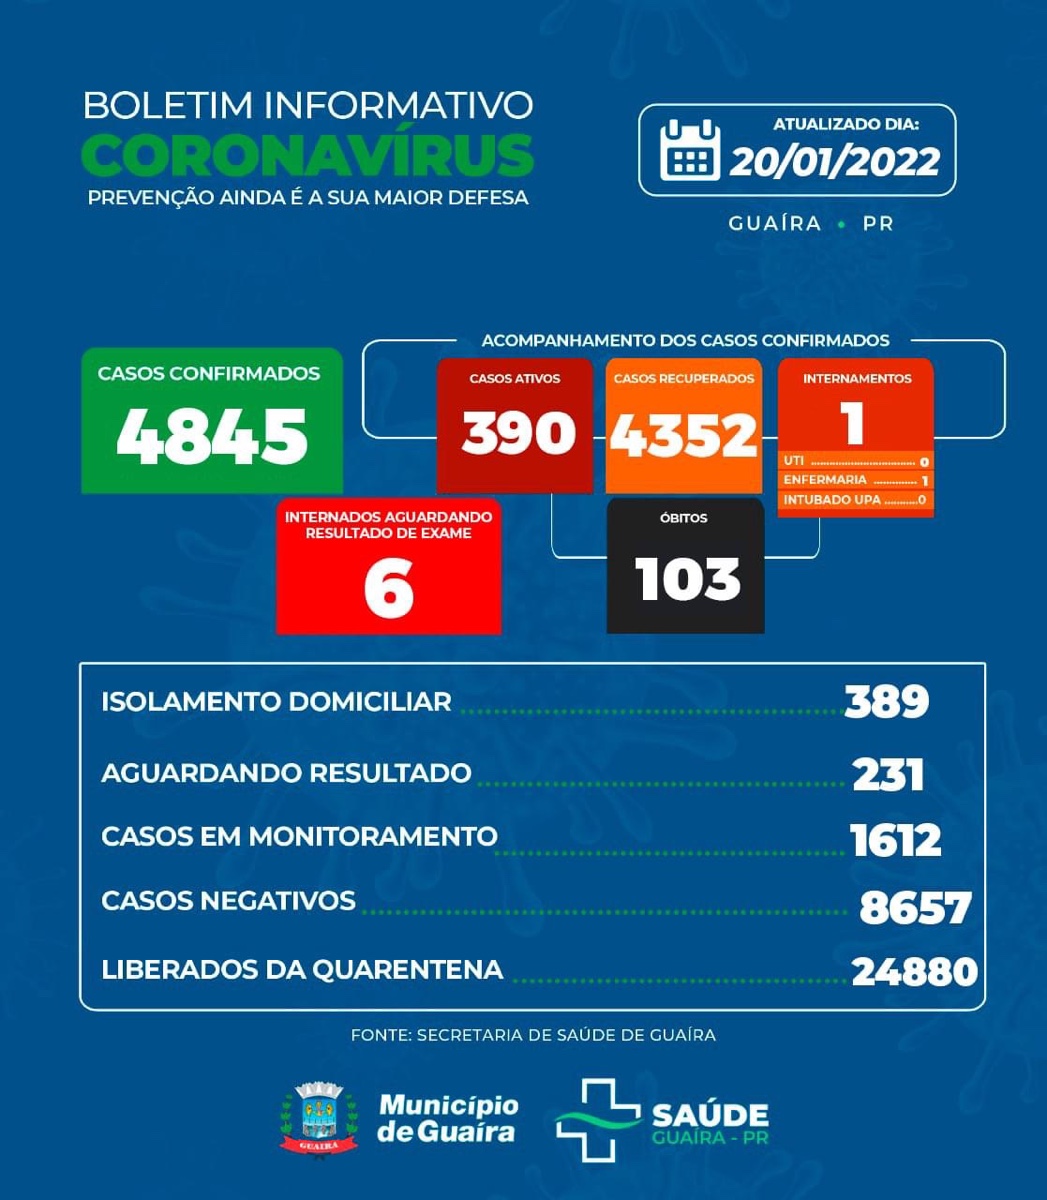 Guaíra - Covid-19: saúde informa 390 casos ativos e 231 aguardando resultado • Portal Guaíra